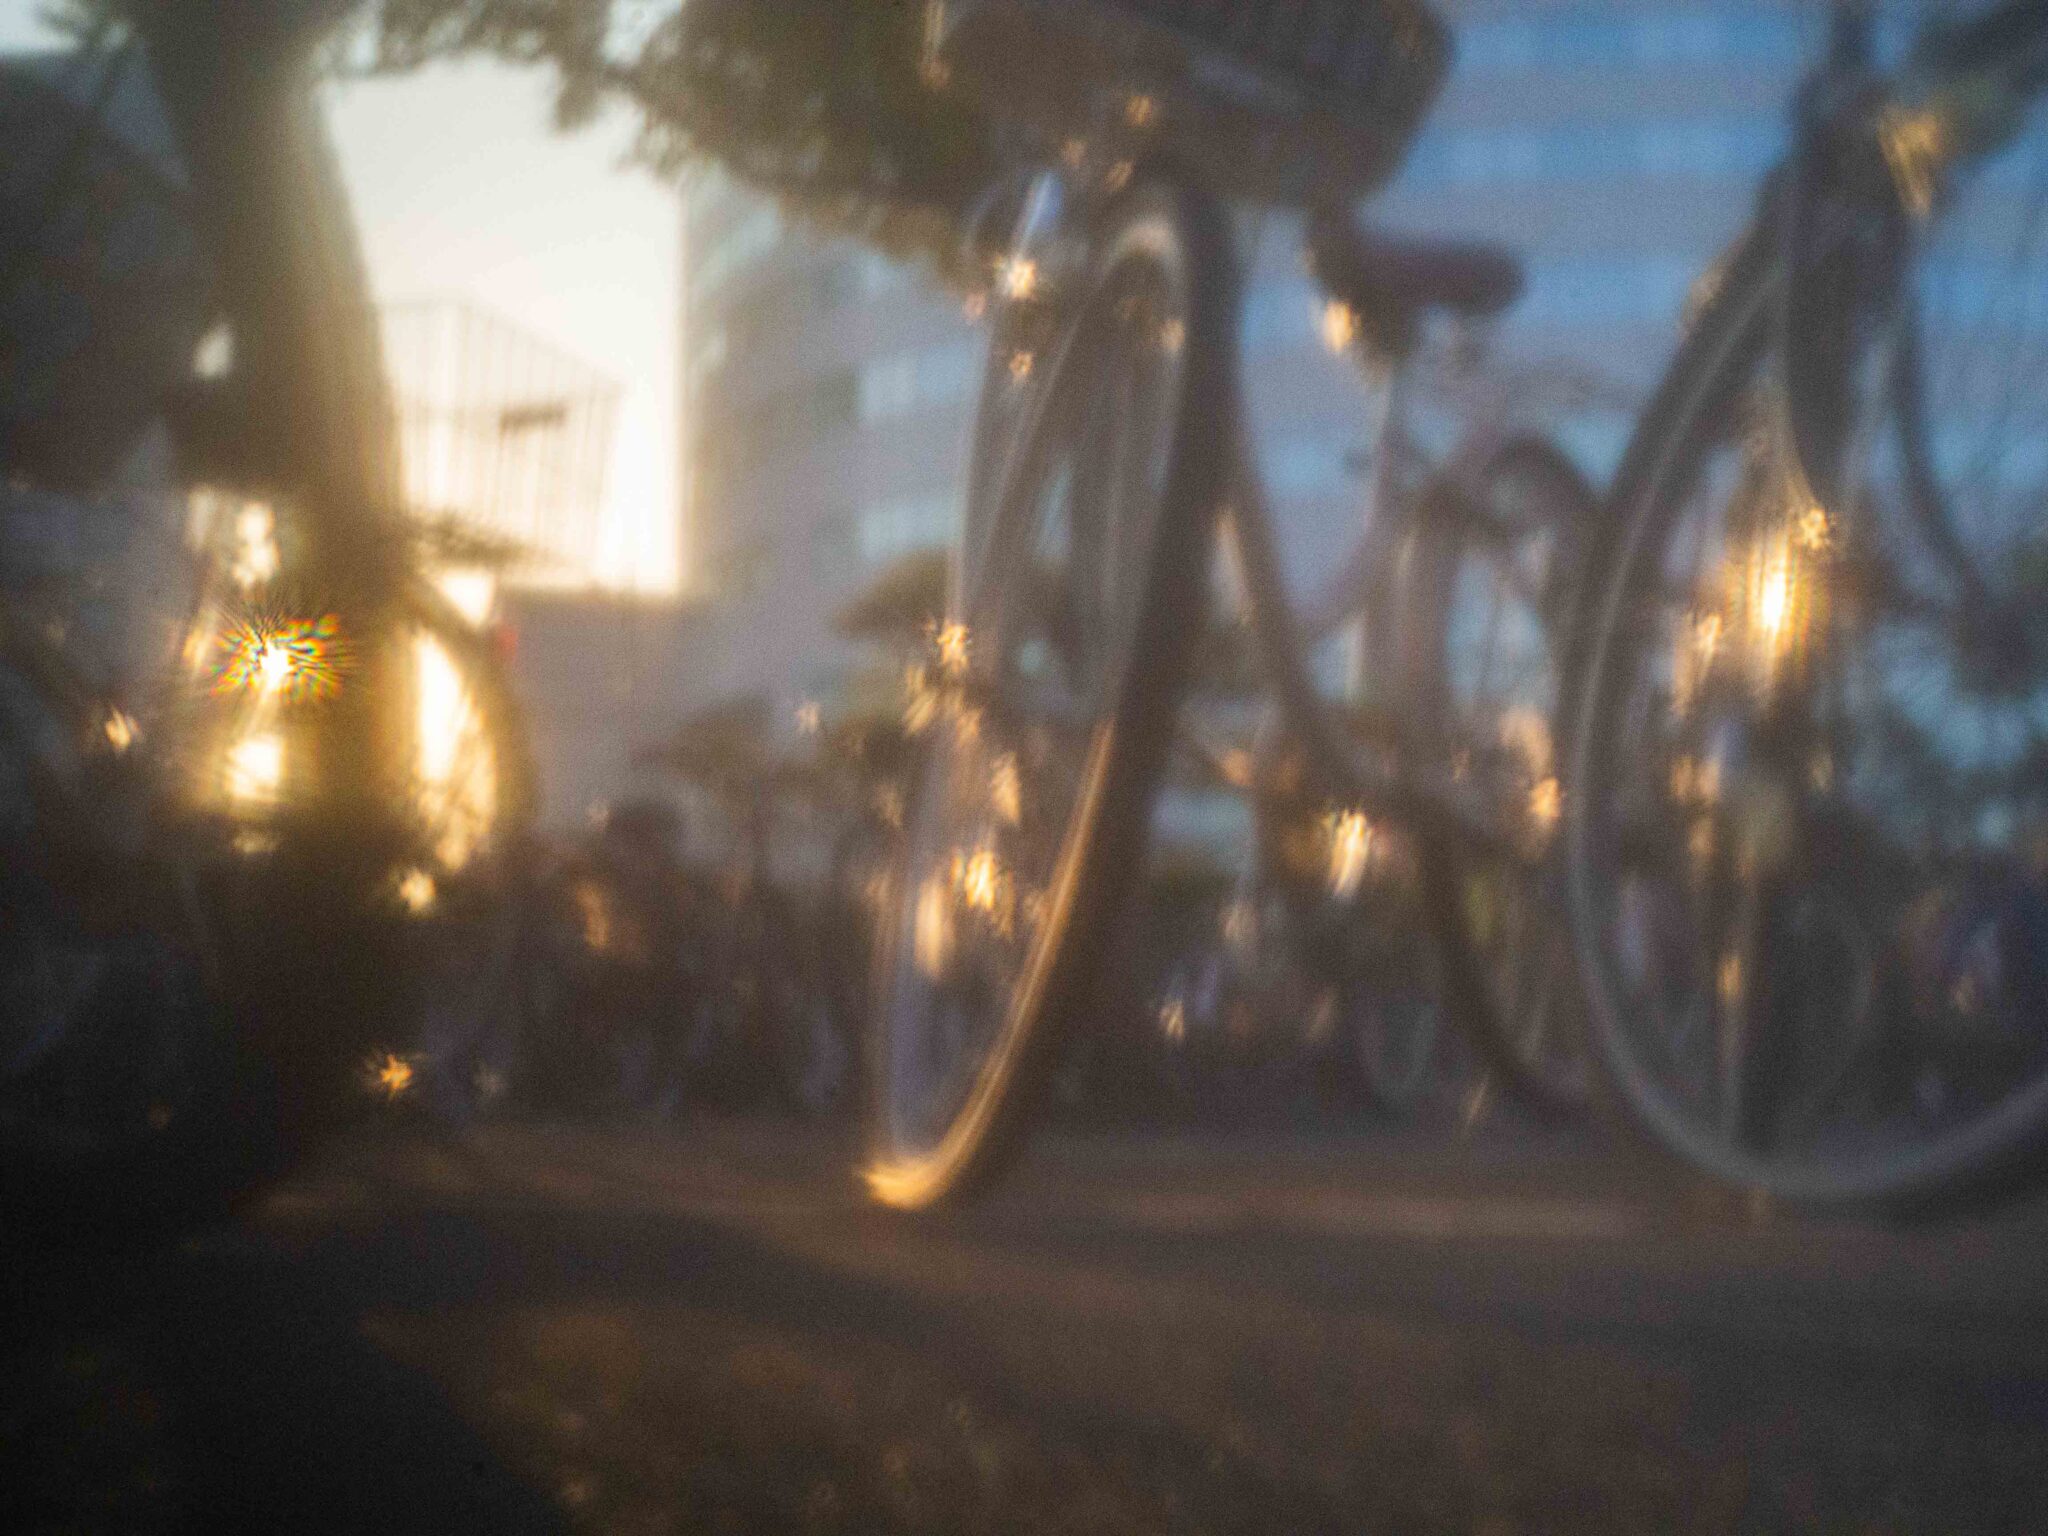 ピンホールカメラで撮った自転車置き場